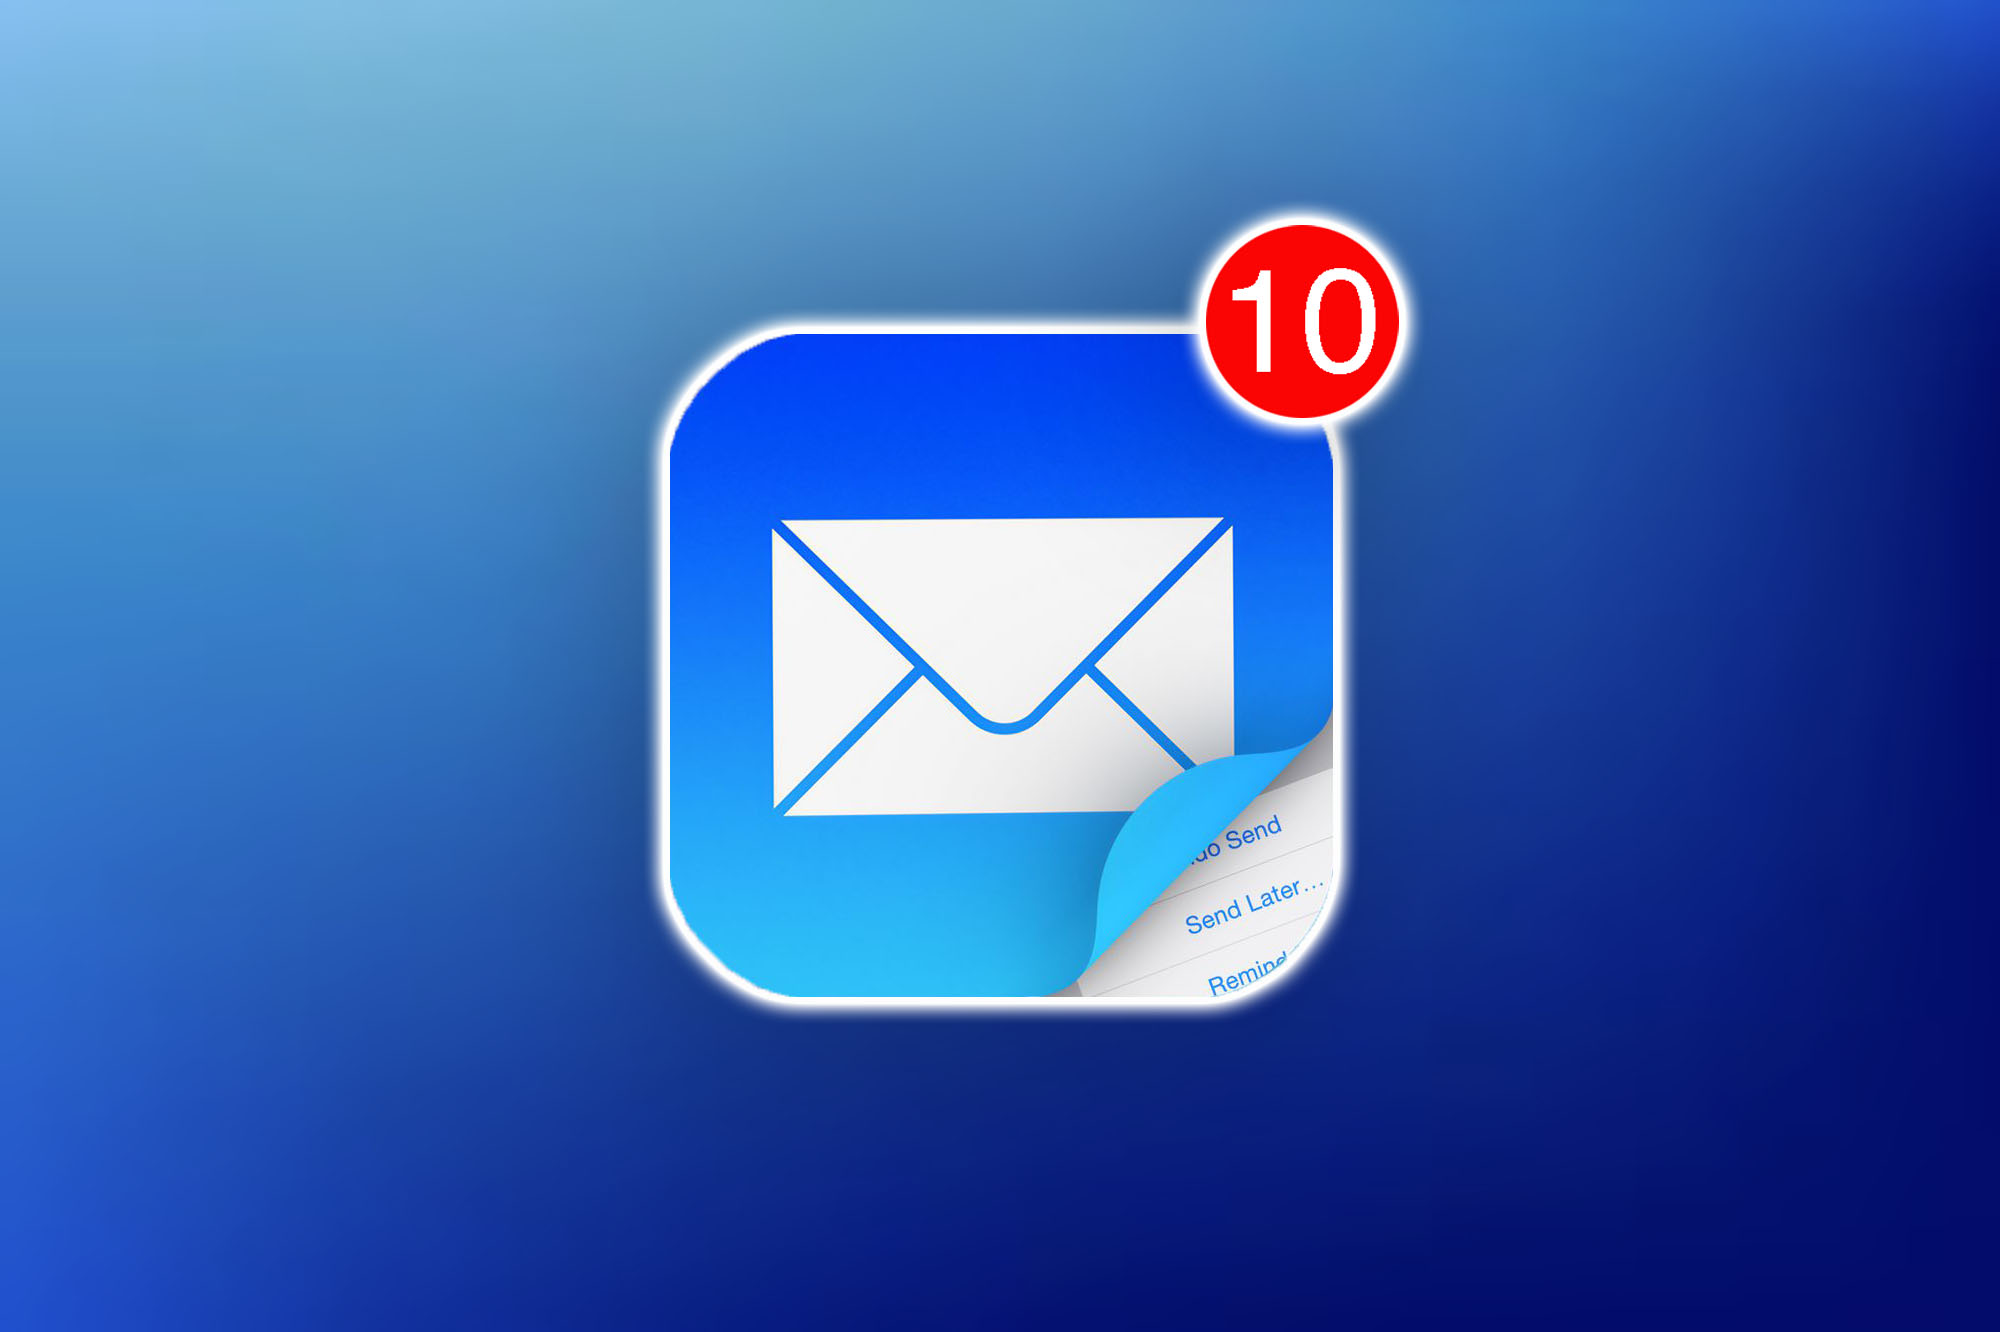 10 скрытых возможностей приложения Почта на iPhone. Например, ввод текста письма через камеру